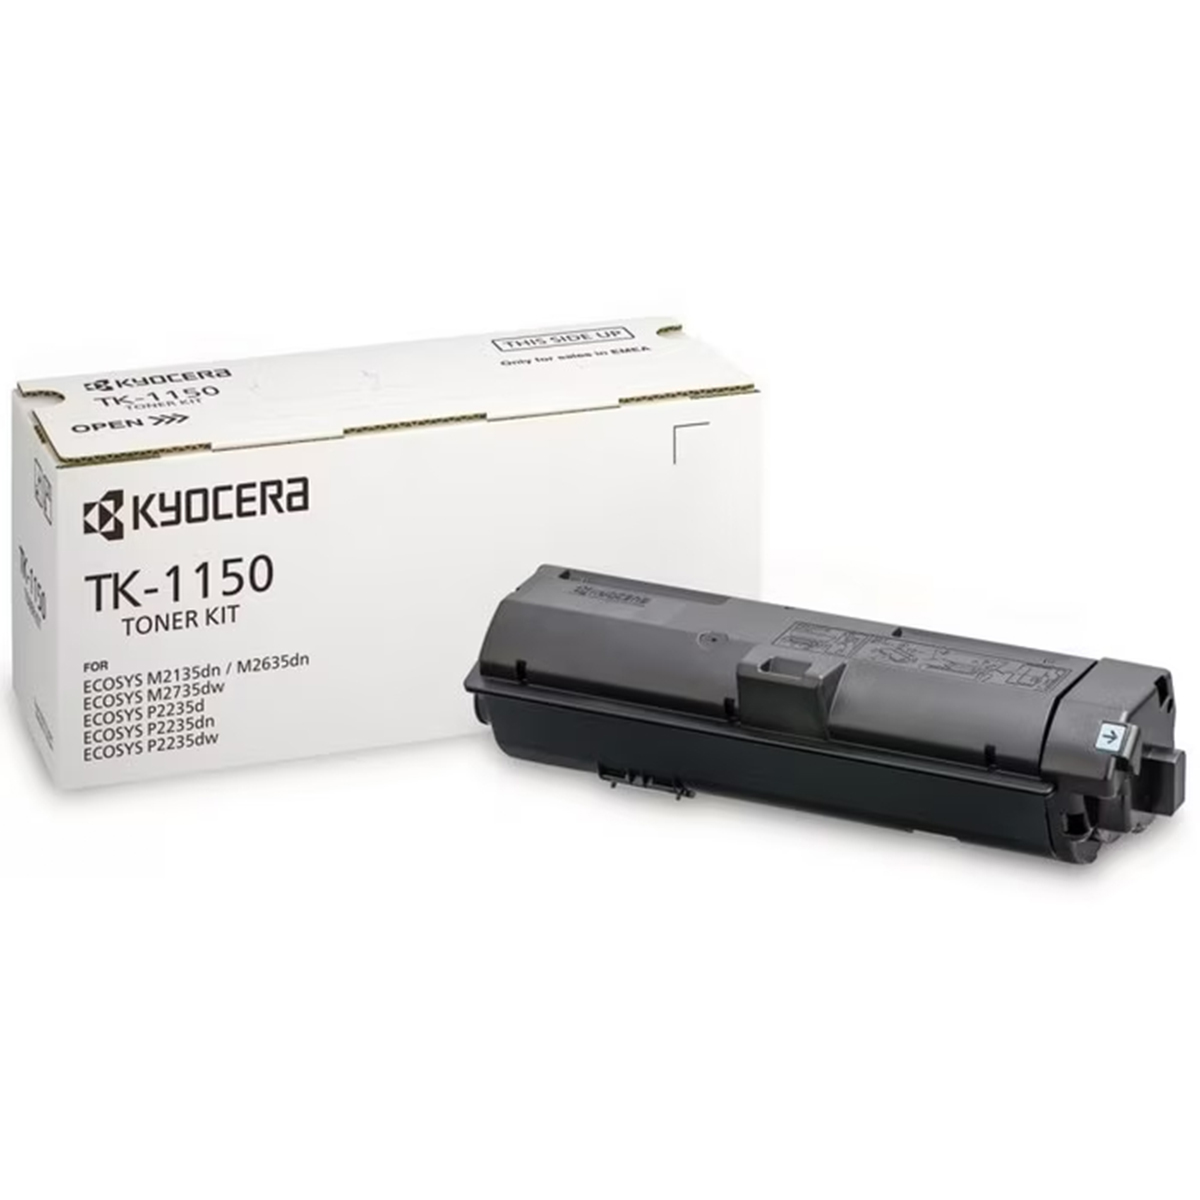 Toner Kyocera TK-1150, 3000 pagini, Pentru ECOSYS M2135dn, M2635dn, M2735dw, P2235dn, P2235dw, Negru